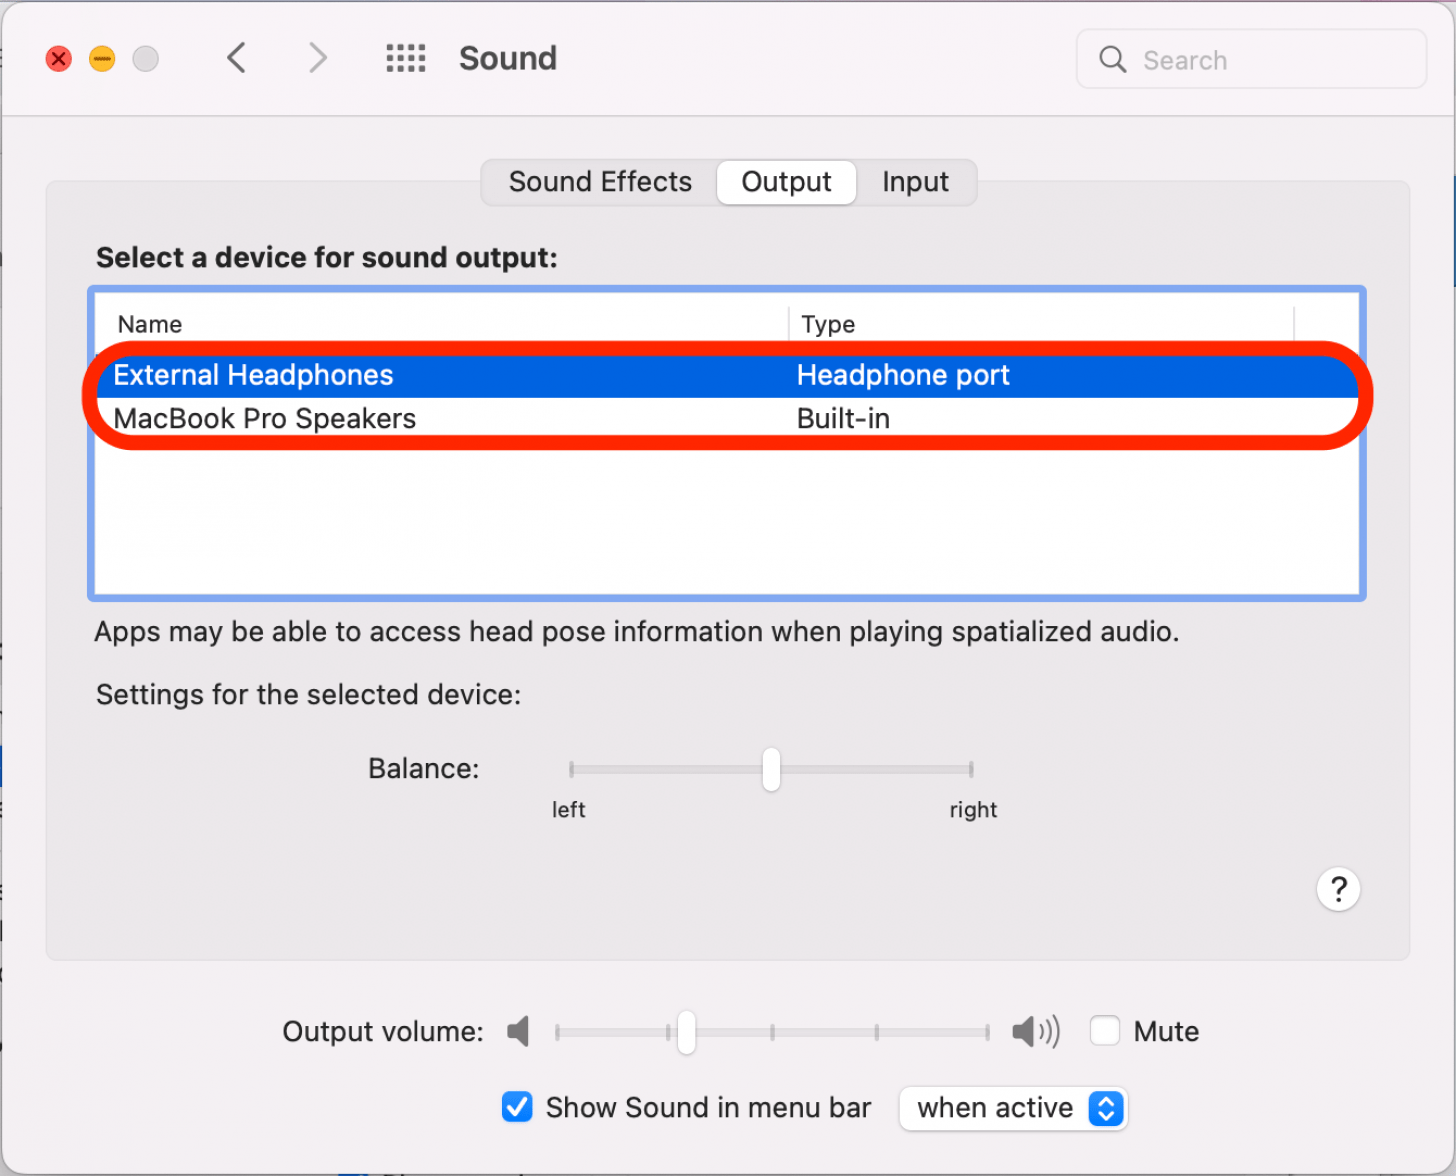 Haga clic para seleccionar un dispositivo para la salida de sonido.  Las opciones enumerarán todos los dispositivos disponibles actualmente.  Cualquiera que esté resaltado está actualmente seleccionado.